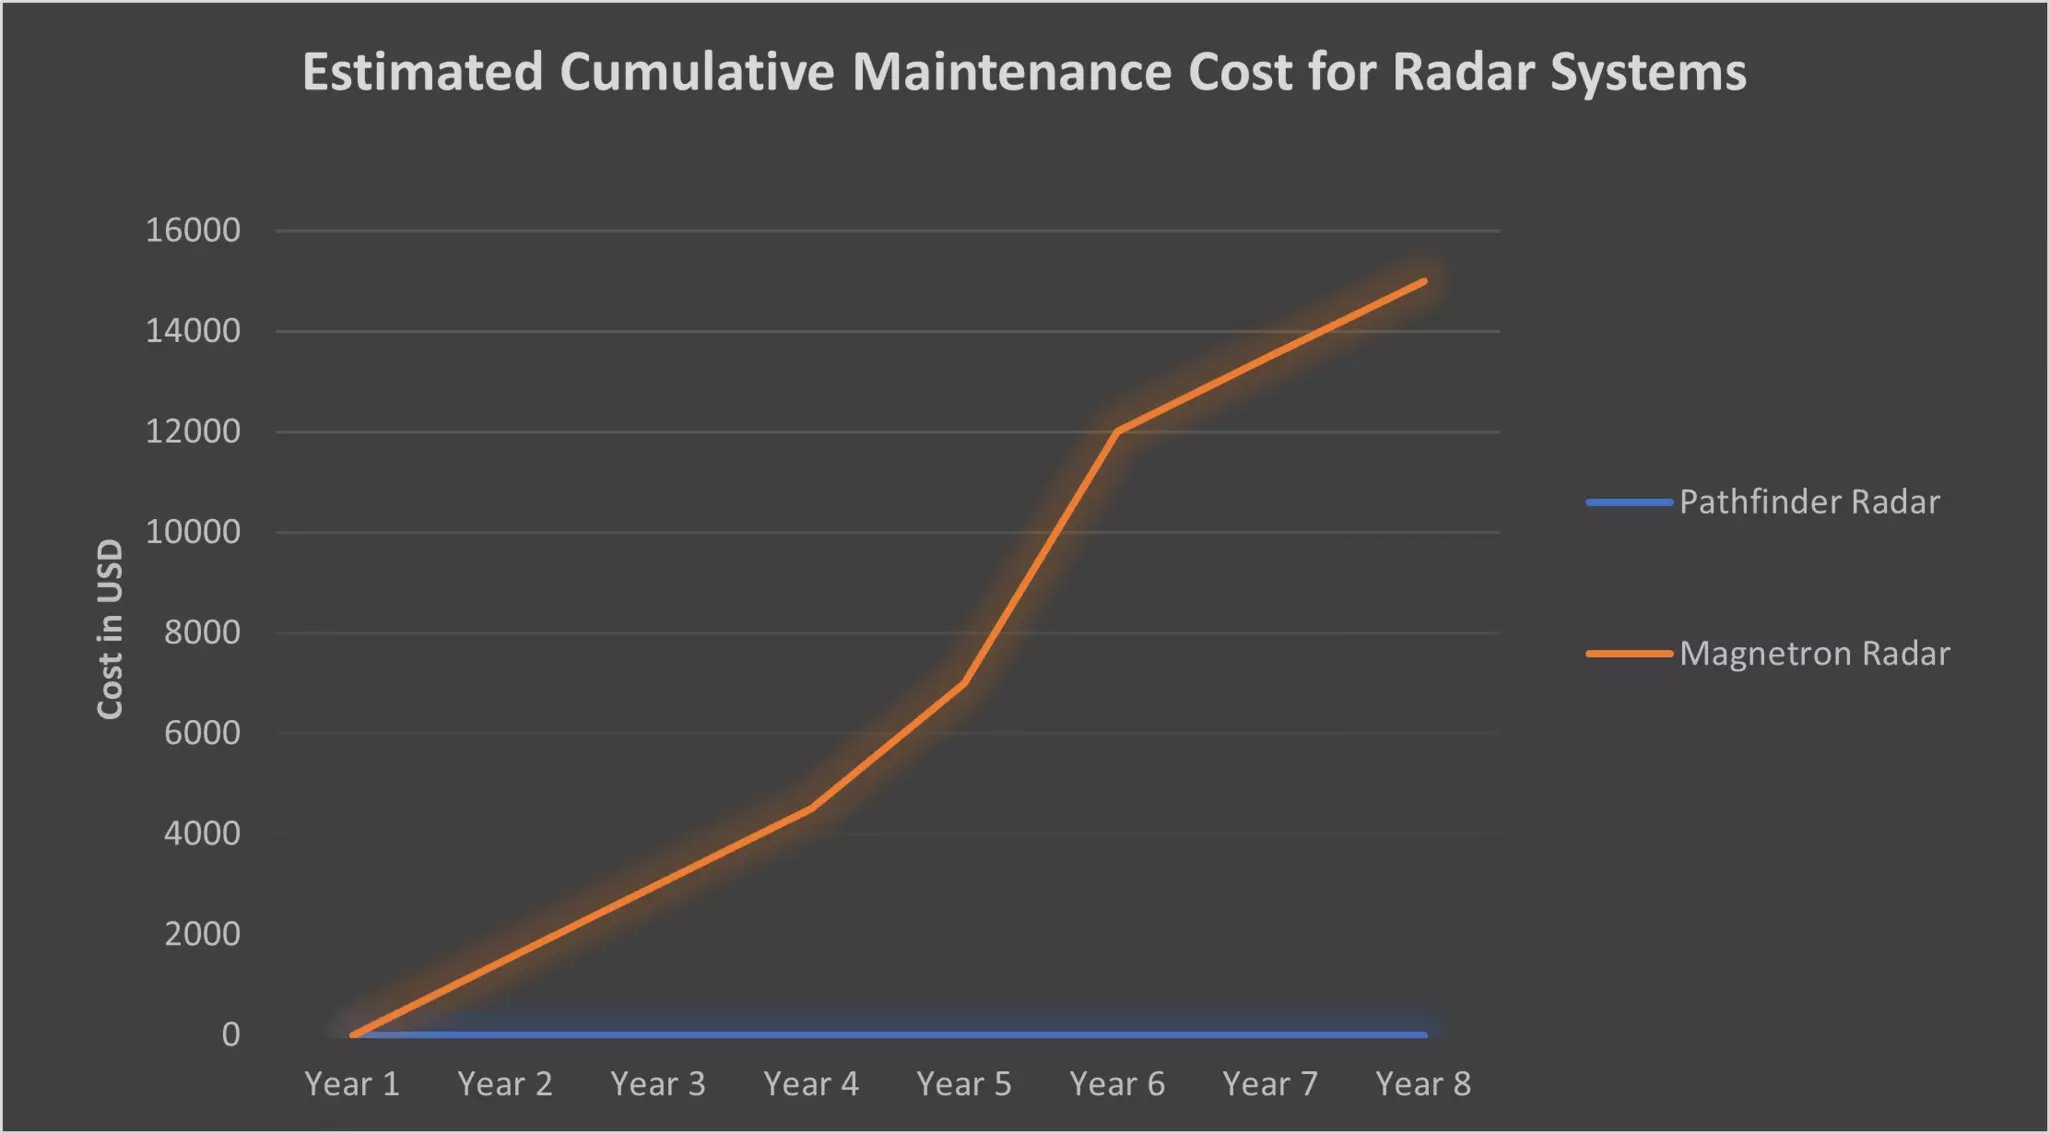 Servicekostnader för Pathfinder kontra Magnetron Radar